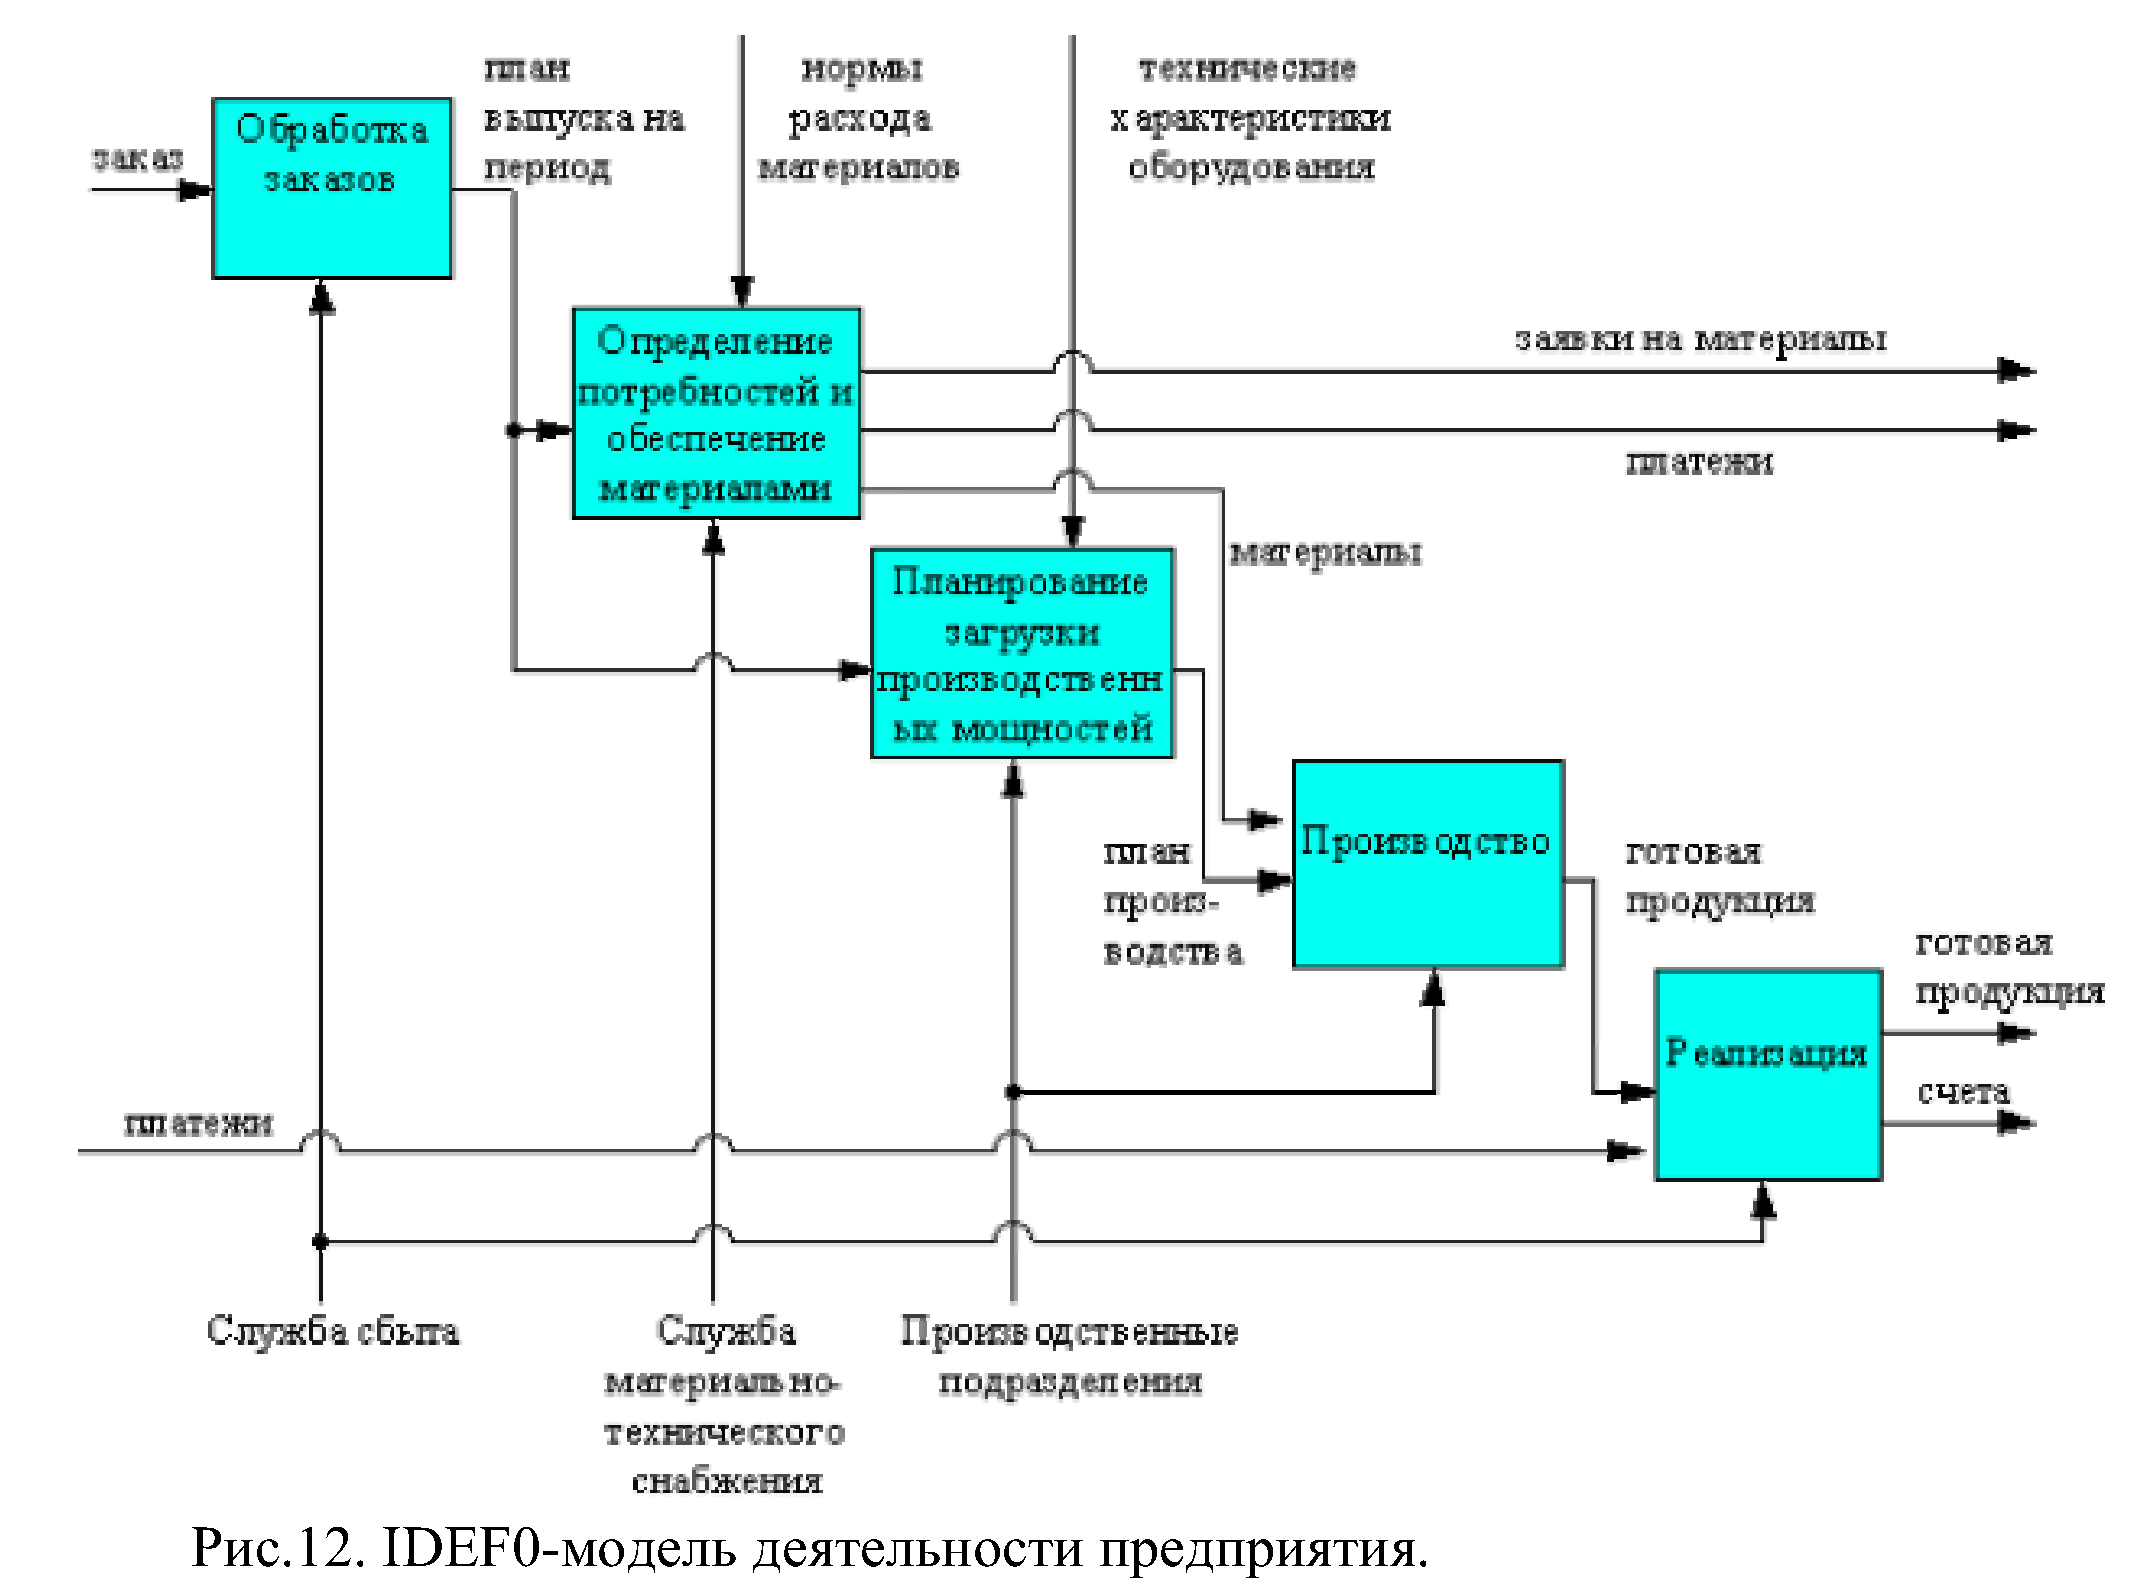 Бизнес процесс информационное обеспечение. Функциональная диаграмма idef0. Функциональная модель компании idef0. Функциональная модель в нотации idef0. Диаграмма idef0 мессенджера.